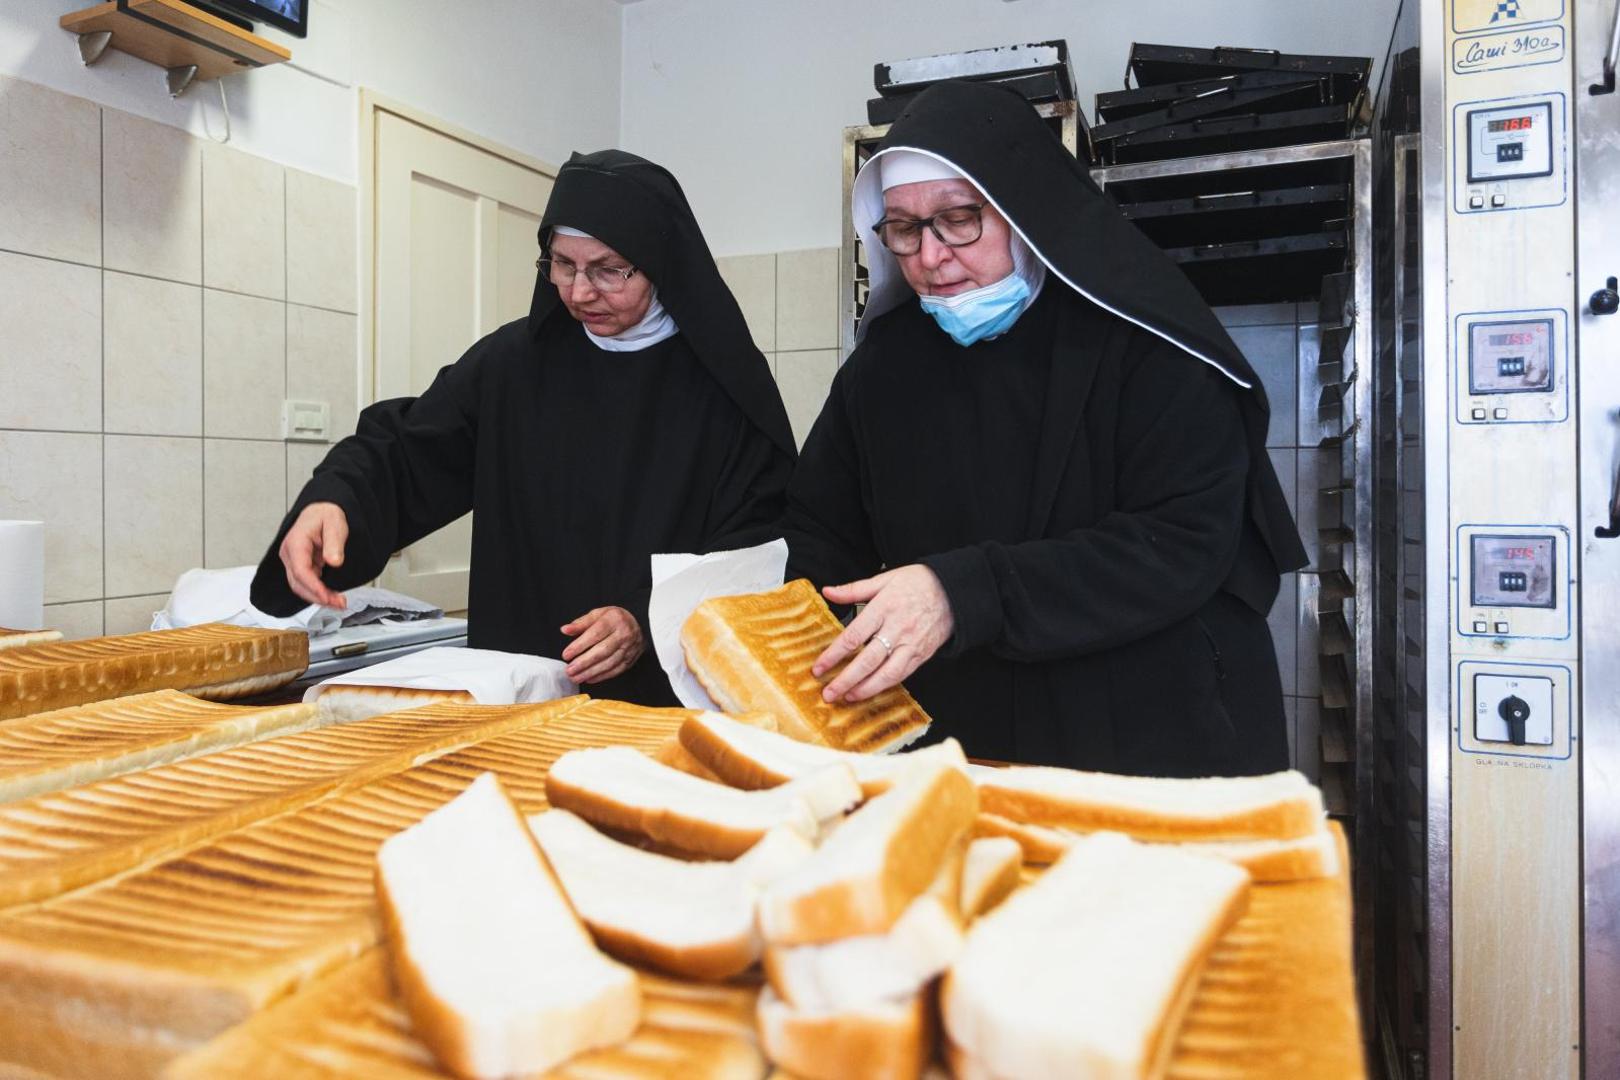 18.03.2021., Pag - Benediktinke samostana svete Margarite prave baskotine u svojoj pekari. Photo: Marko Dimic/PIXSELL